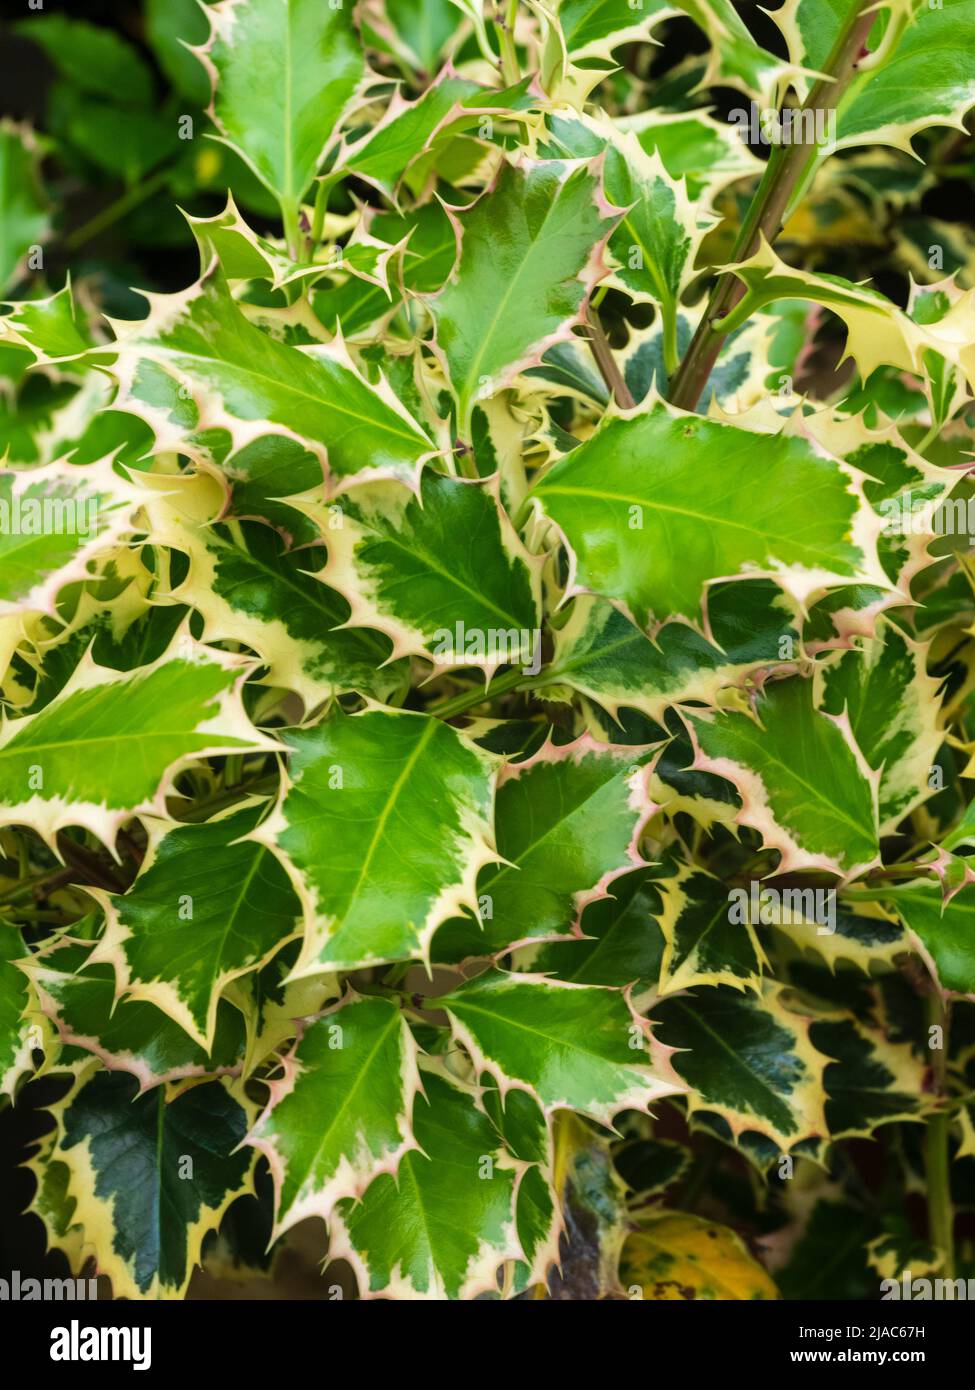 Spiky, white variegated foliage of the decorative holly shrub, Ilex aquifolium 'Argenteomarginata' Stock Photo